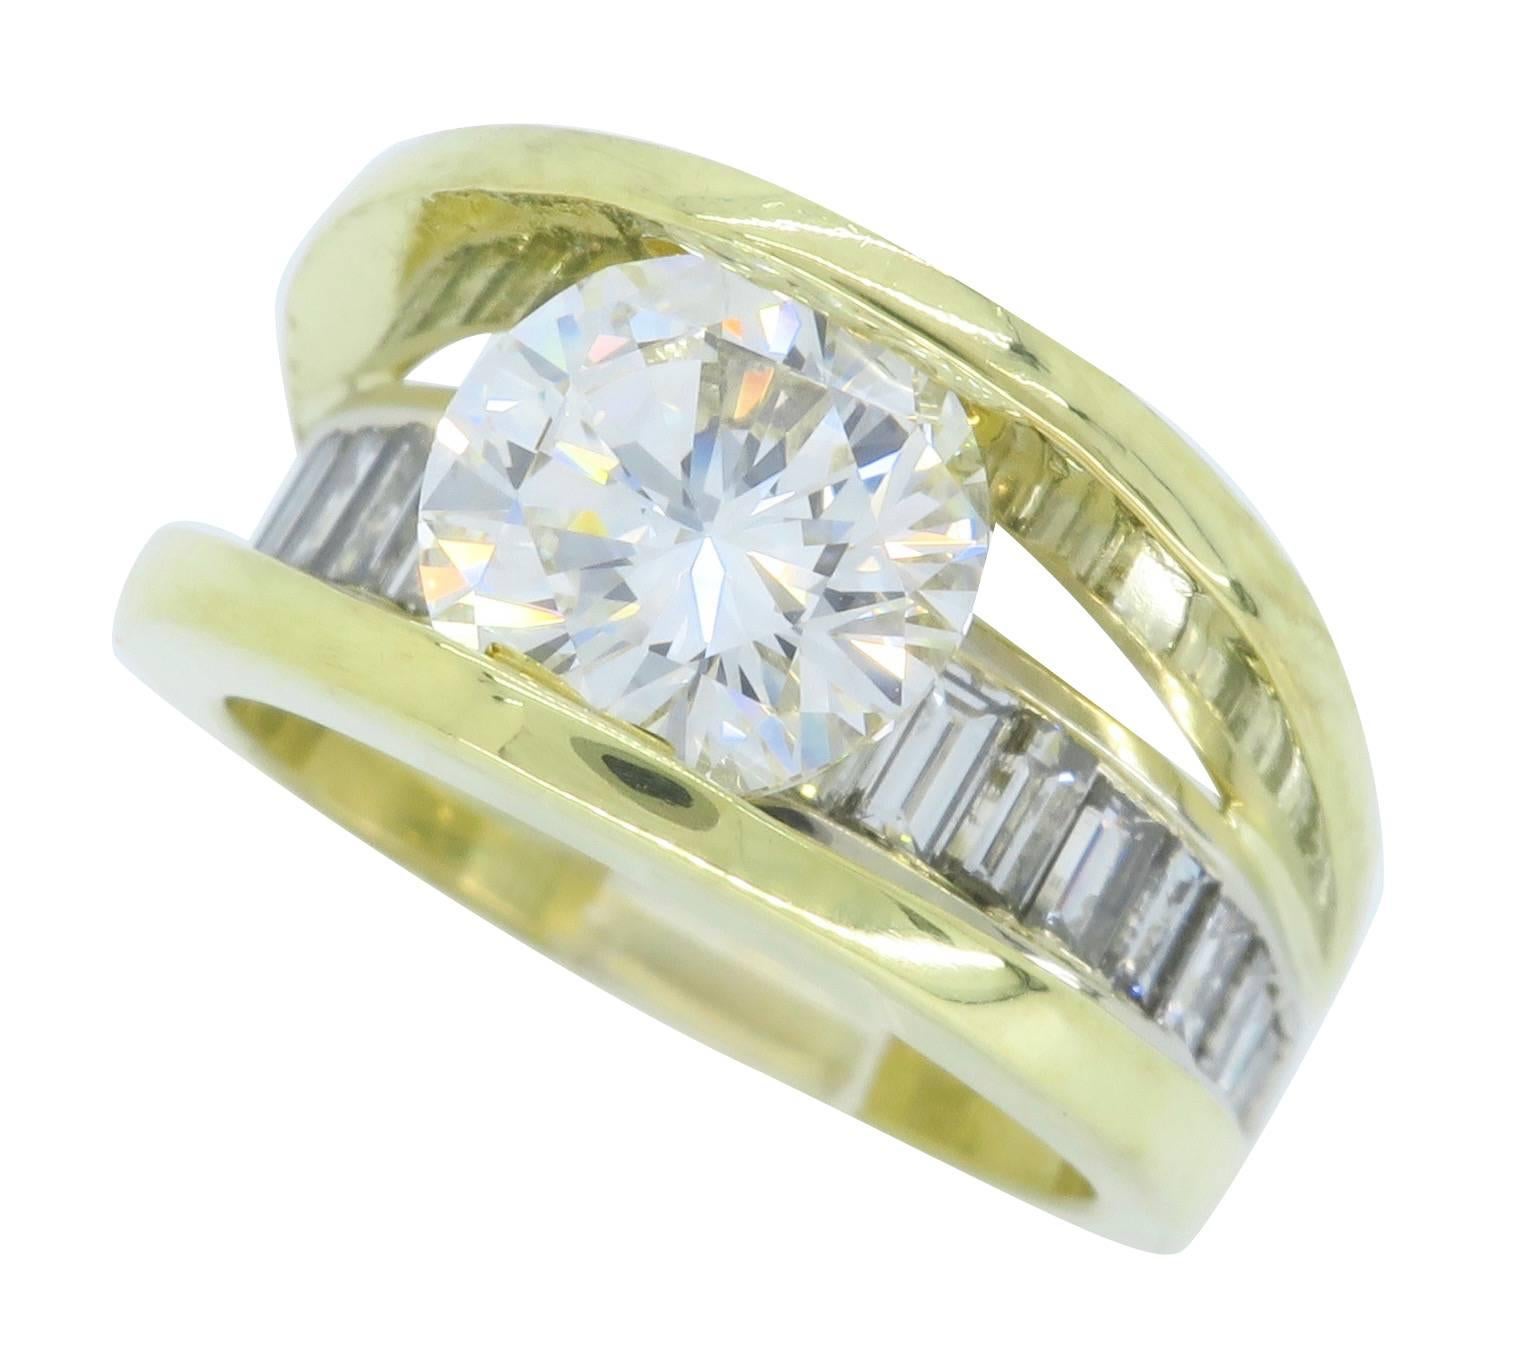 GIA Certified 3.22 Carat Diamond Engagement Ring in 18 Karat Gold 3